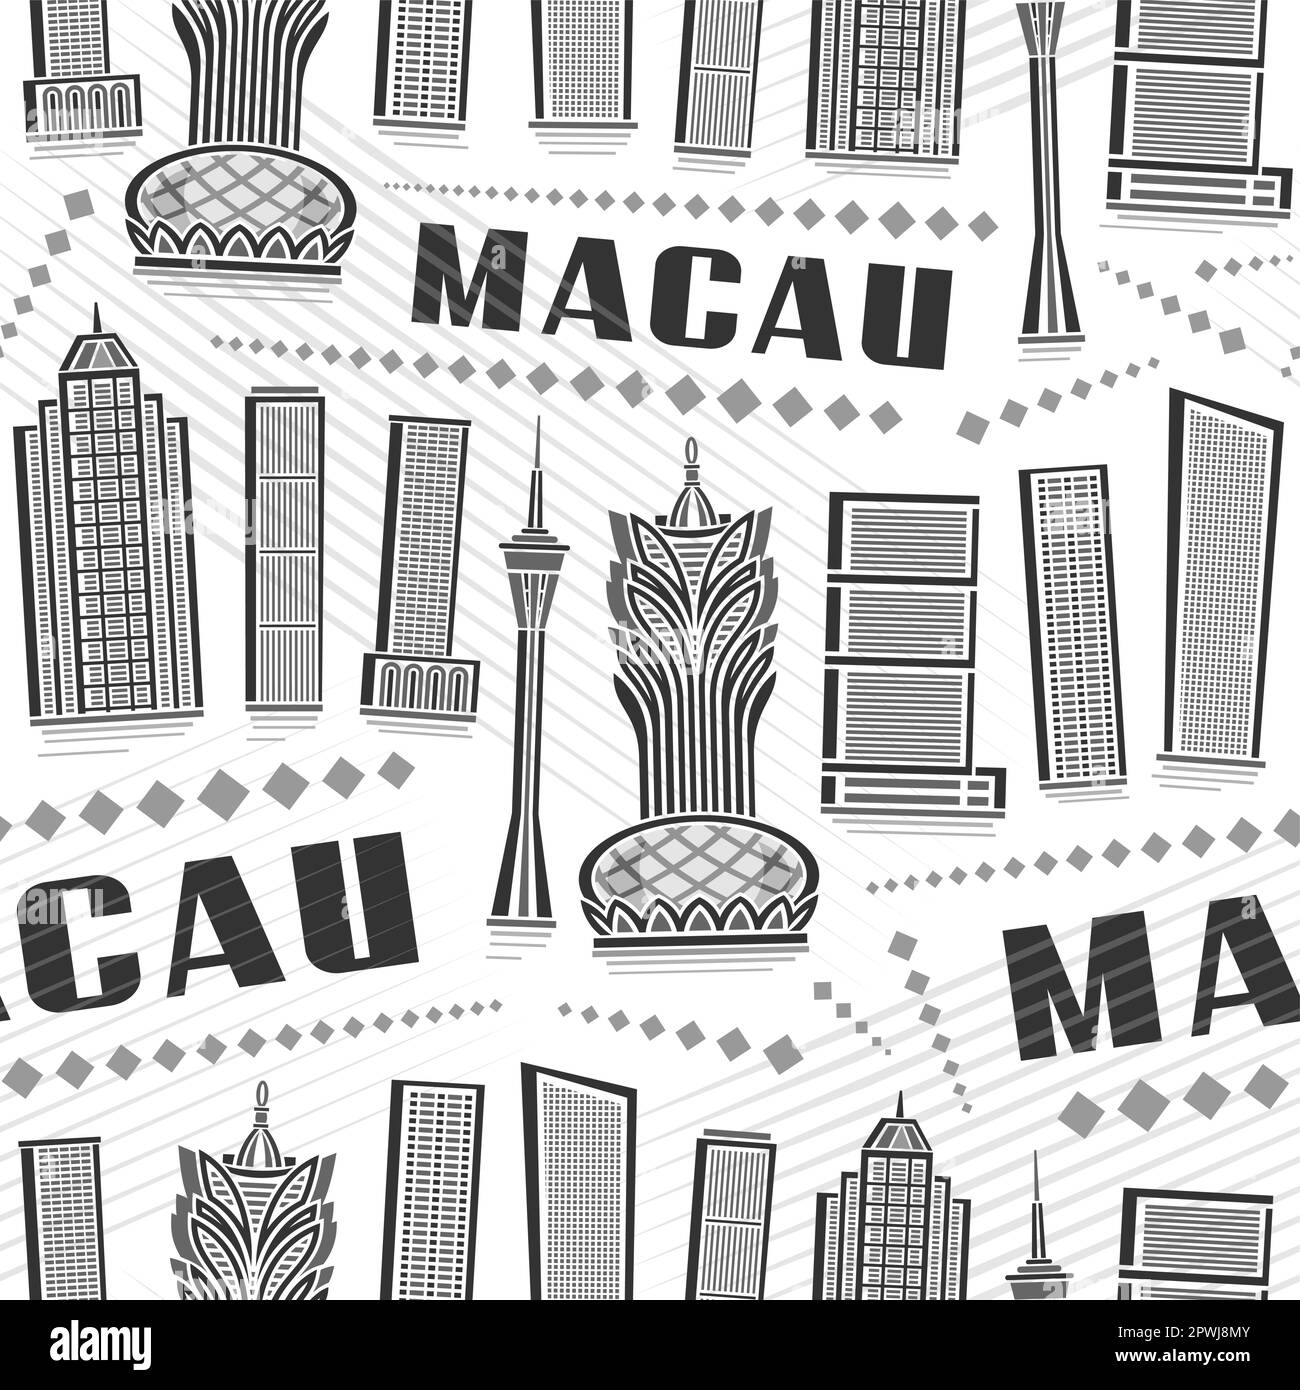 Vector Macau Seamless Pattern, répétition de l'arrière-plan avec illustration de la célèbre ville asiatique de macao sur fond blanc pour papier d'emballage, monochr Illustration de Vecteur